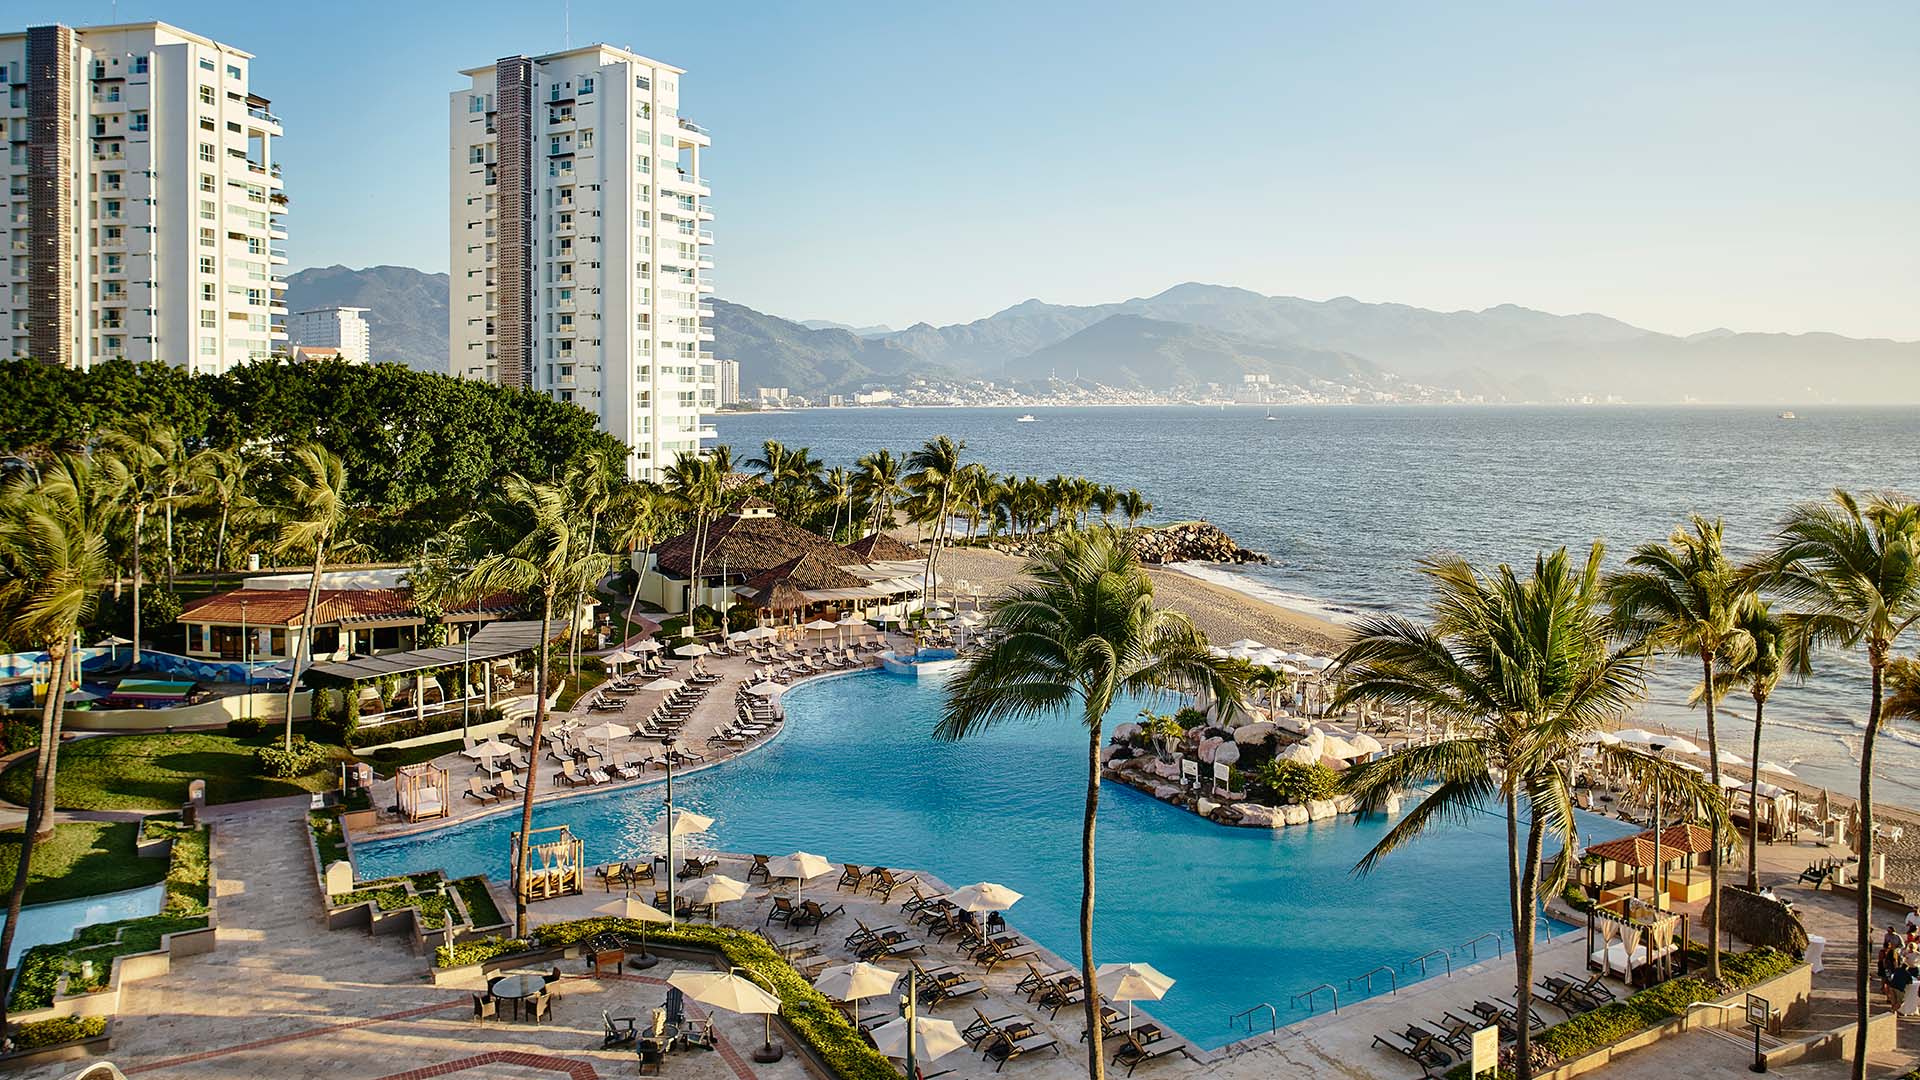 Aerial view of Marriott Puerto Vallarta Resort & Spa